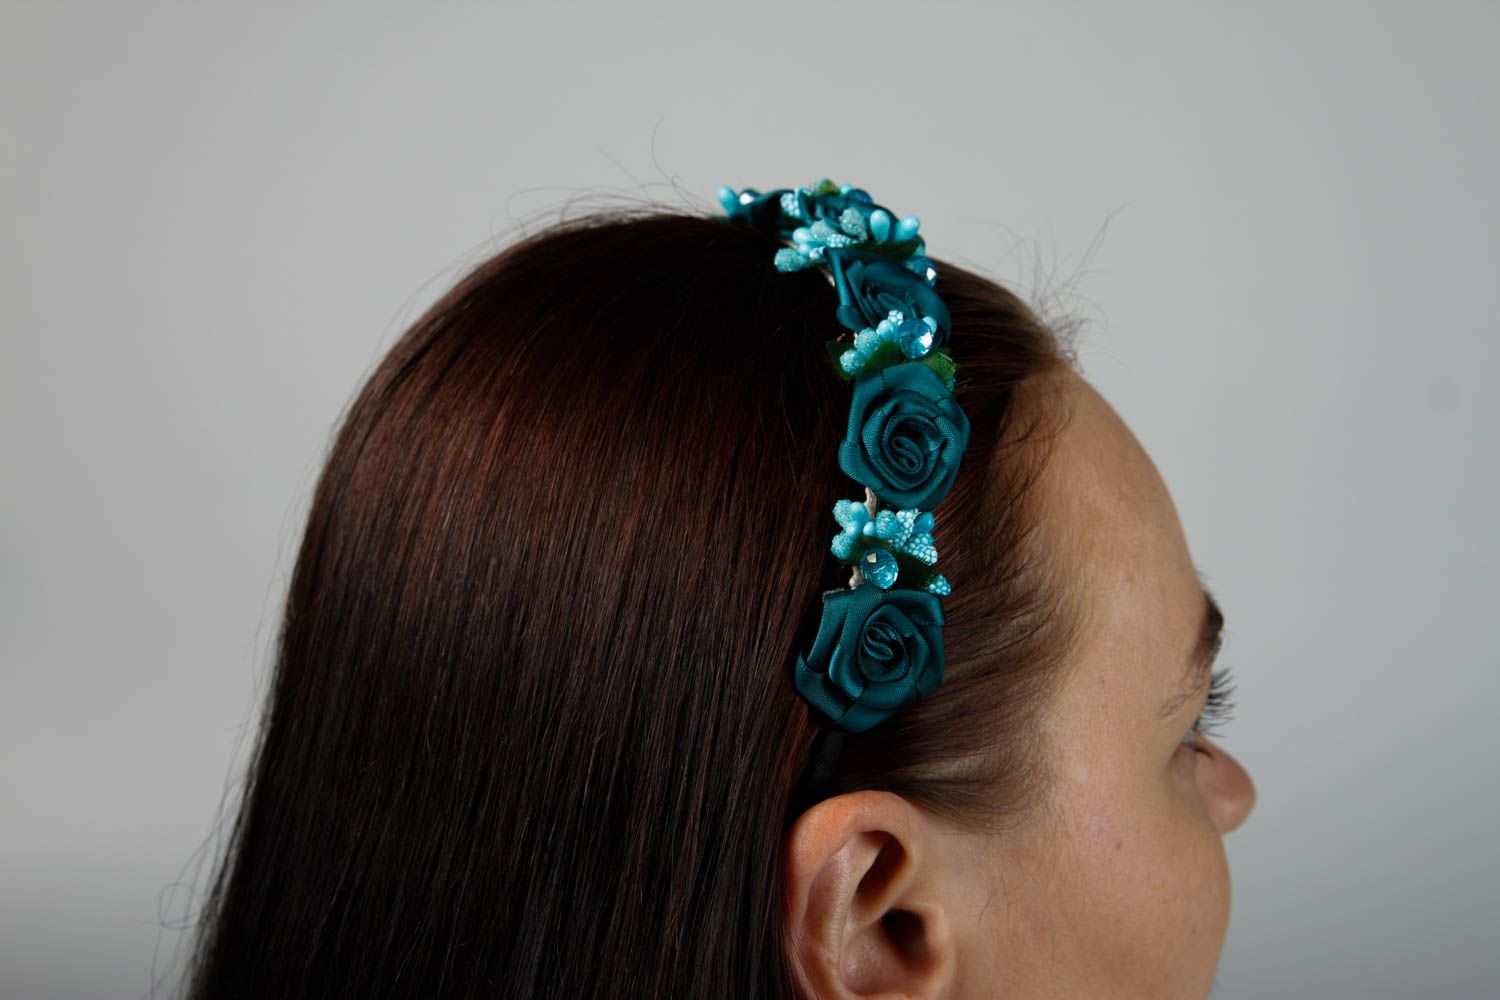 Аксессуар для волос ручной работы обруч на голову с цветами женский аксессуар фото 2